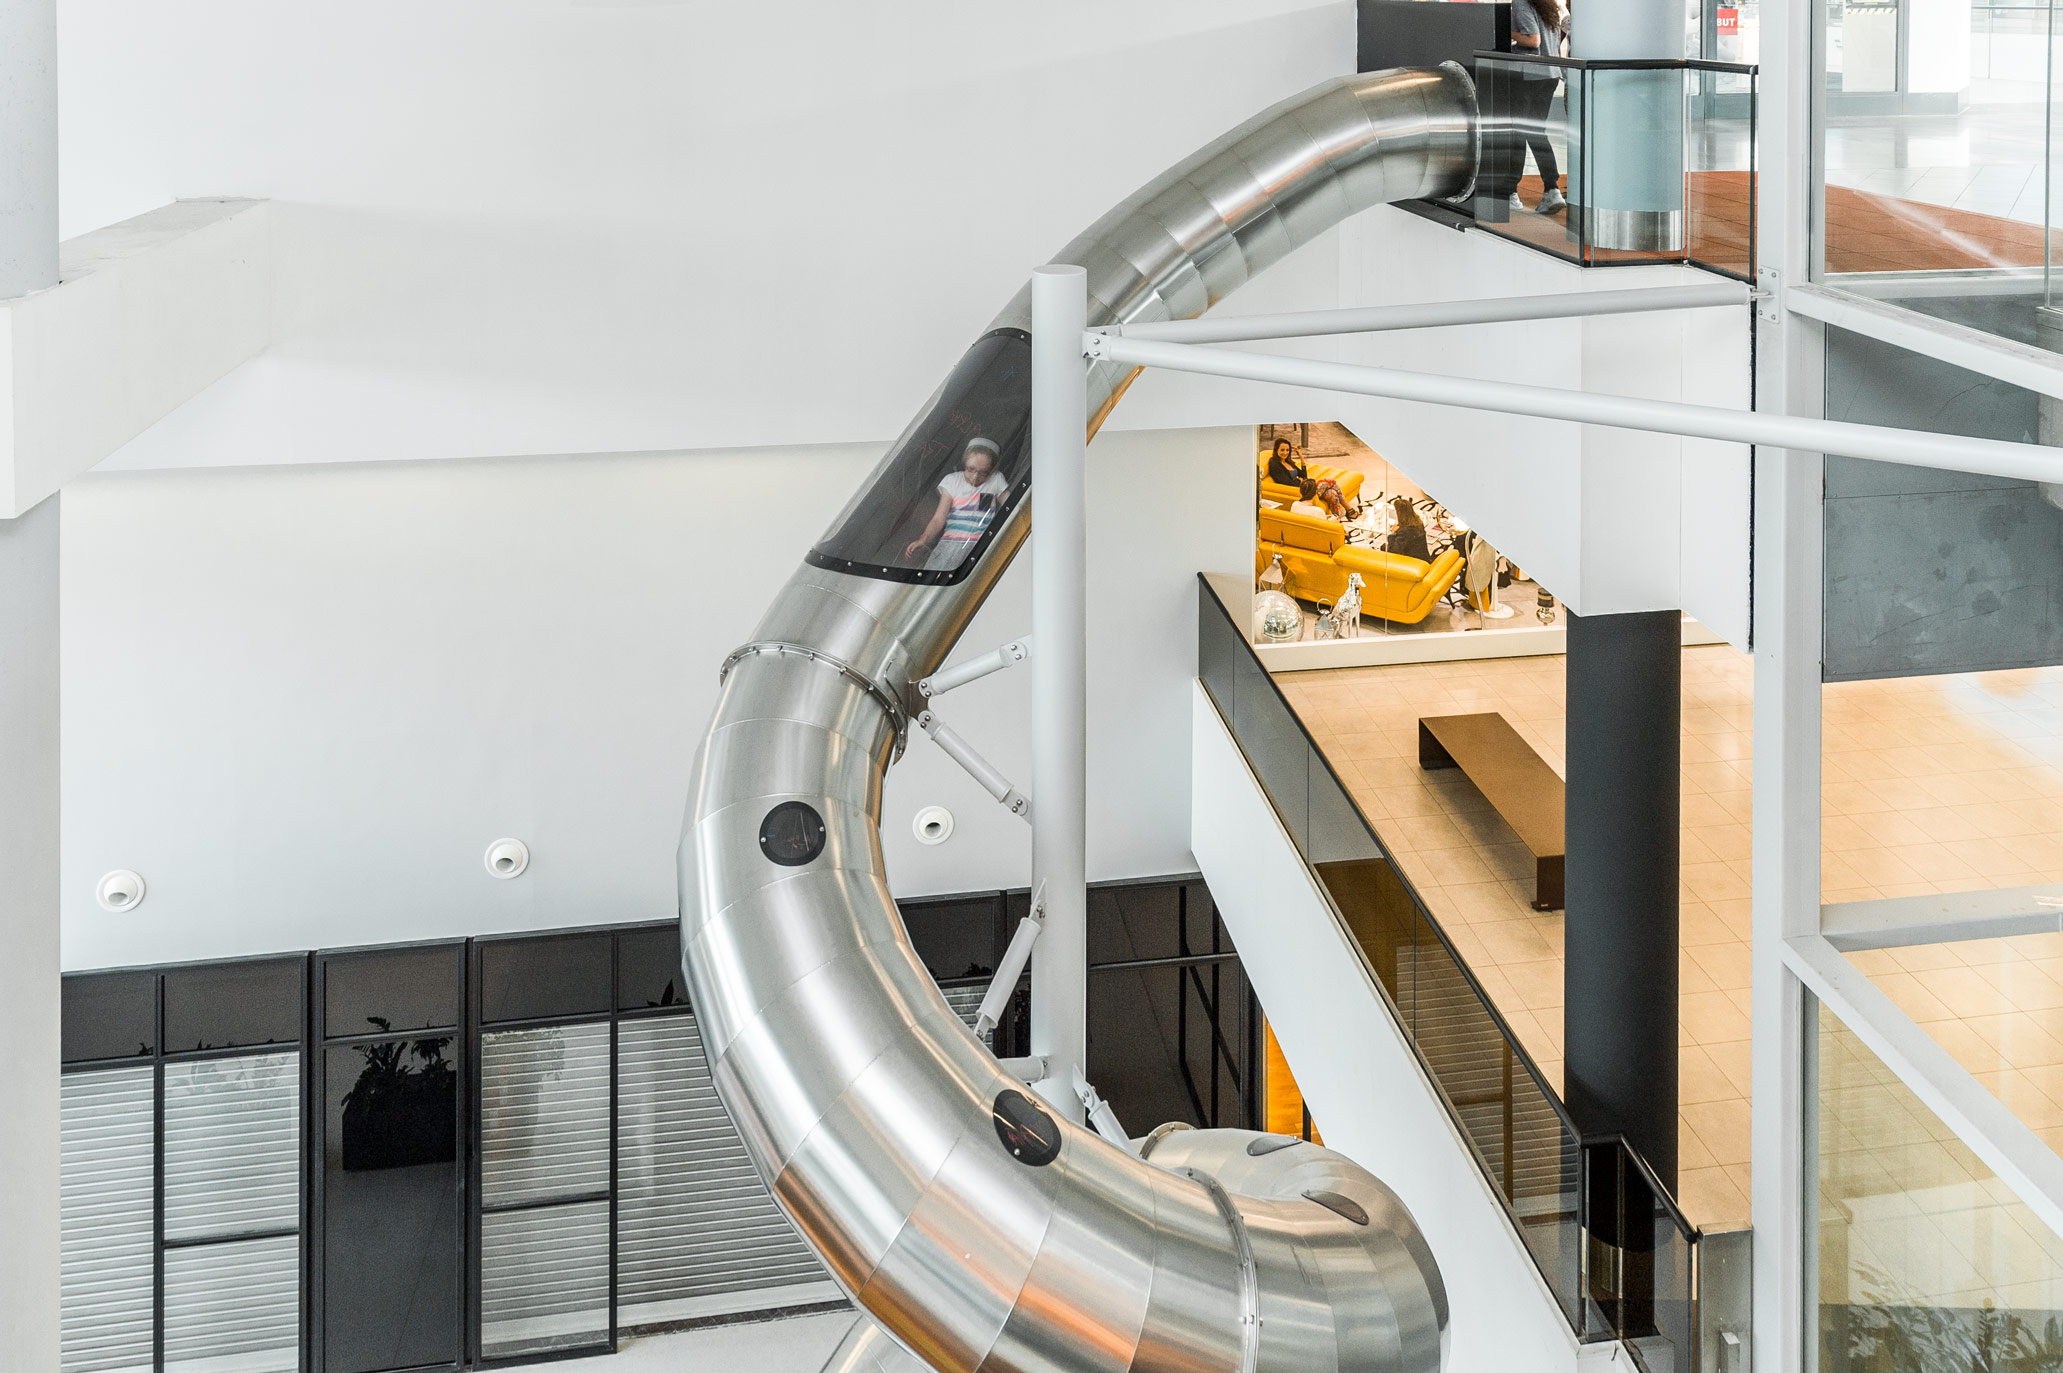 atlantics stainless steel slides shopping centre domus rosny sous bois france indoor tubes 157922